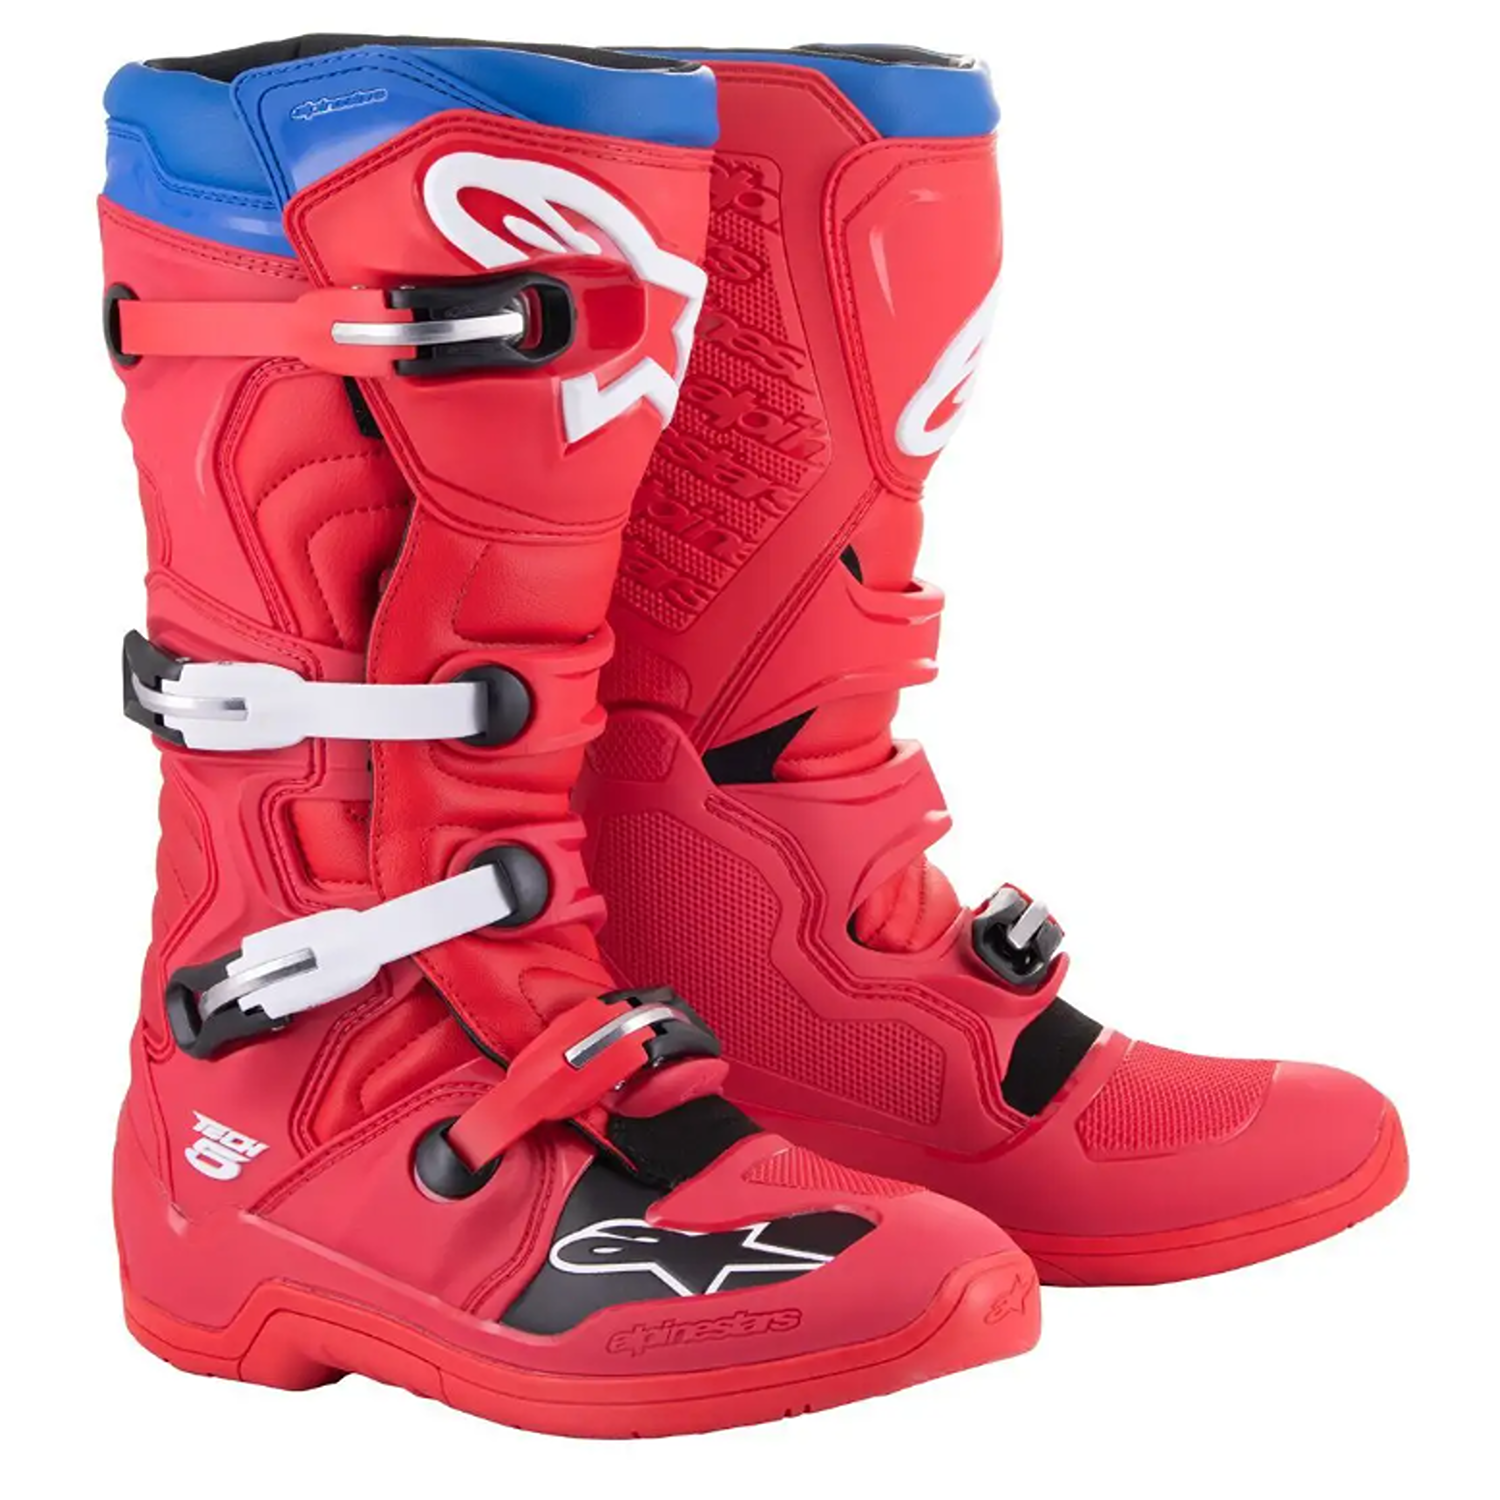 Image of Alpinestars Tech 5 Boots Bright Red Dark Red Blue Größe US 14